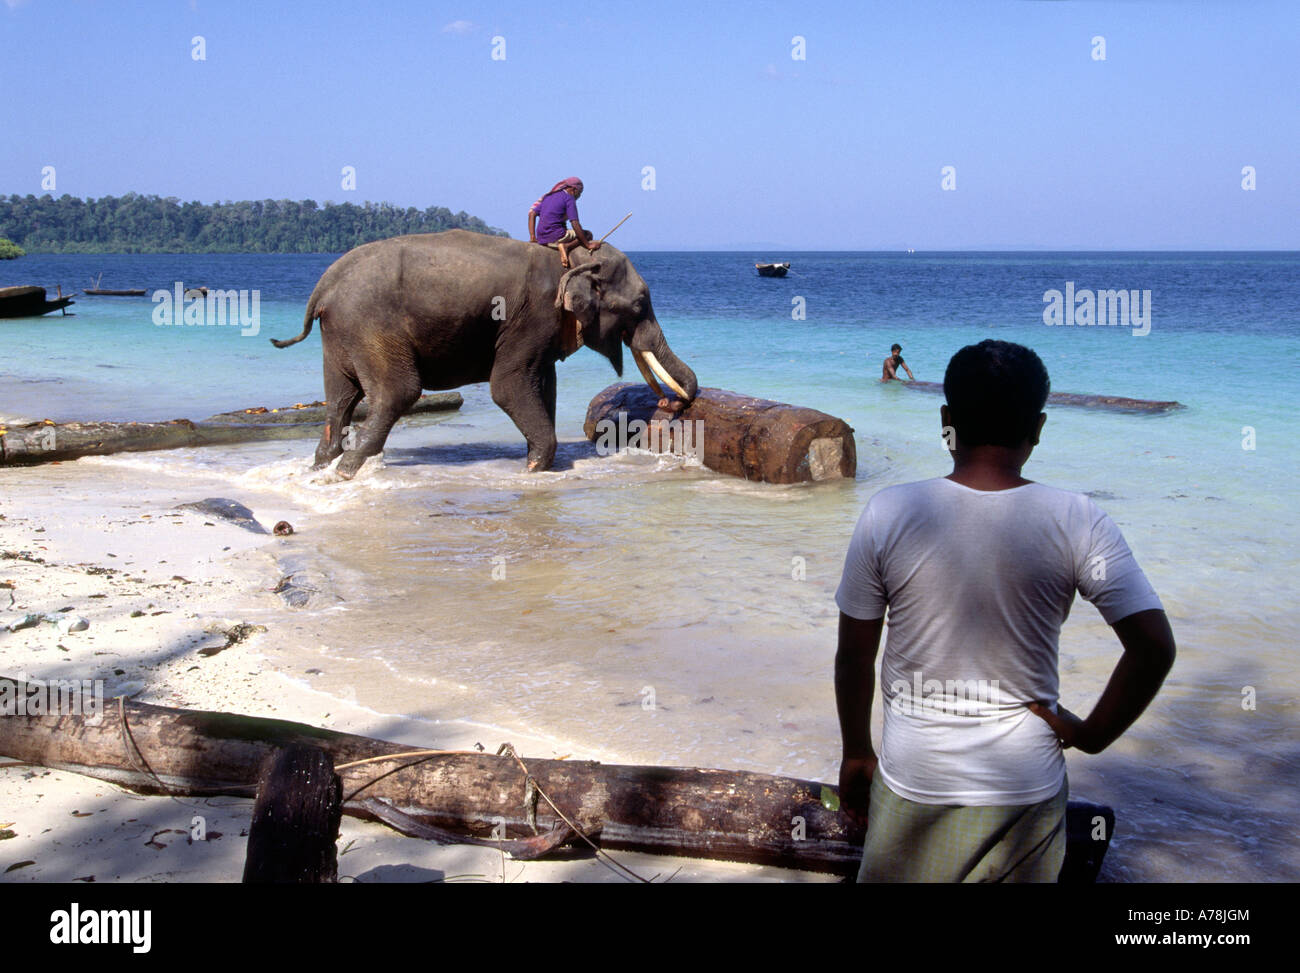 L'Inde Iles Andaman Havelock n° 1 foresterie villageoise elephant déménagement gurjun sciage de la plage Banque D'Images